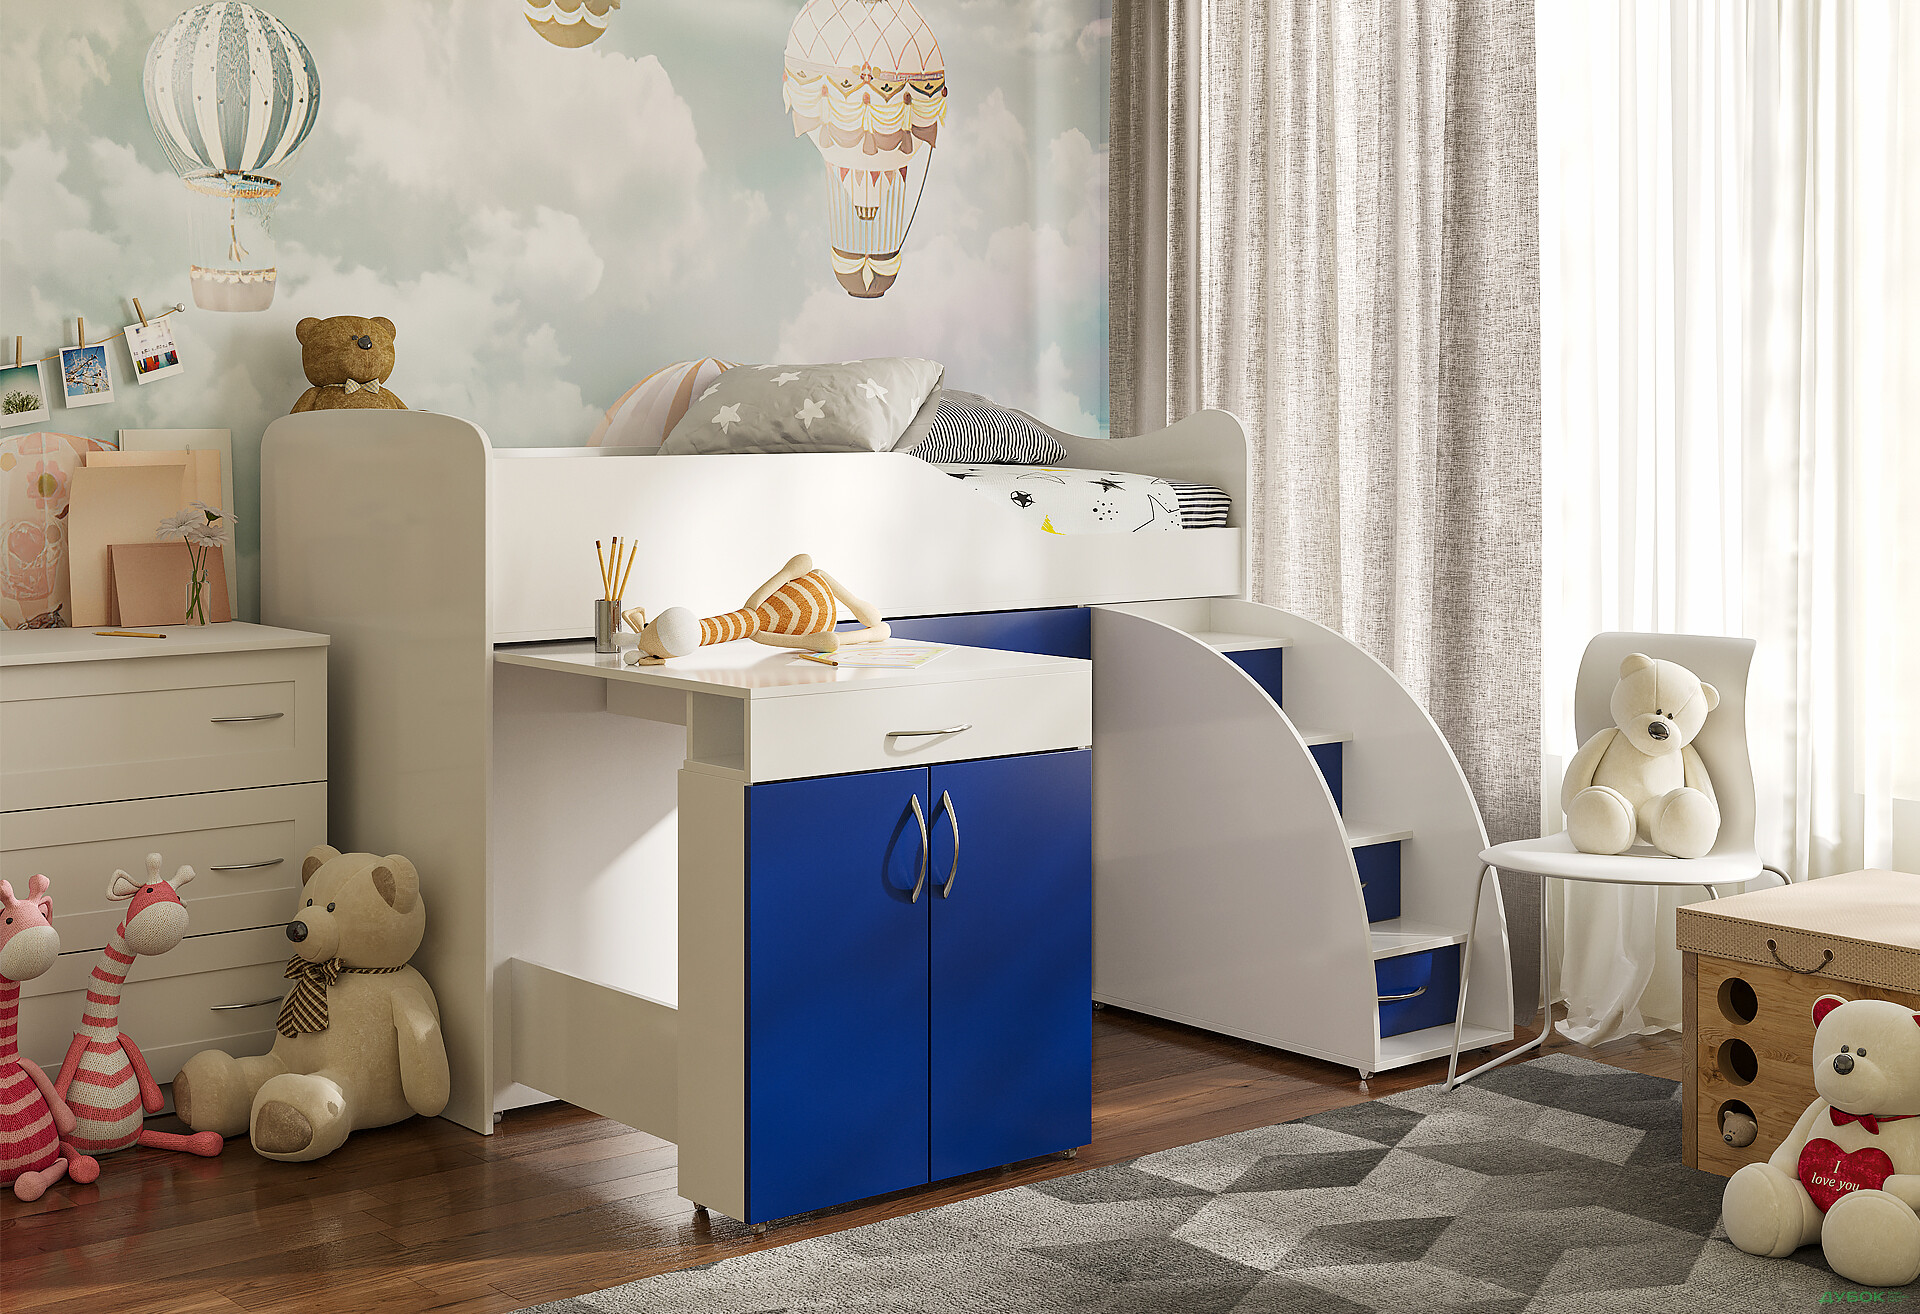 Фото 9 - Кровать-горка Виорина Деко 5 80х180 см с ящиками, лестницами и столом